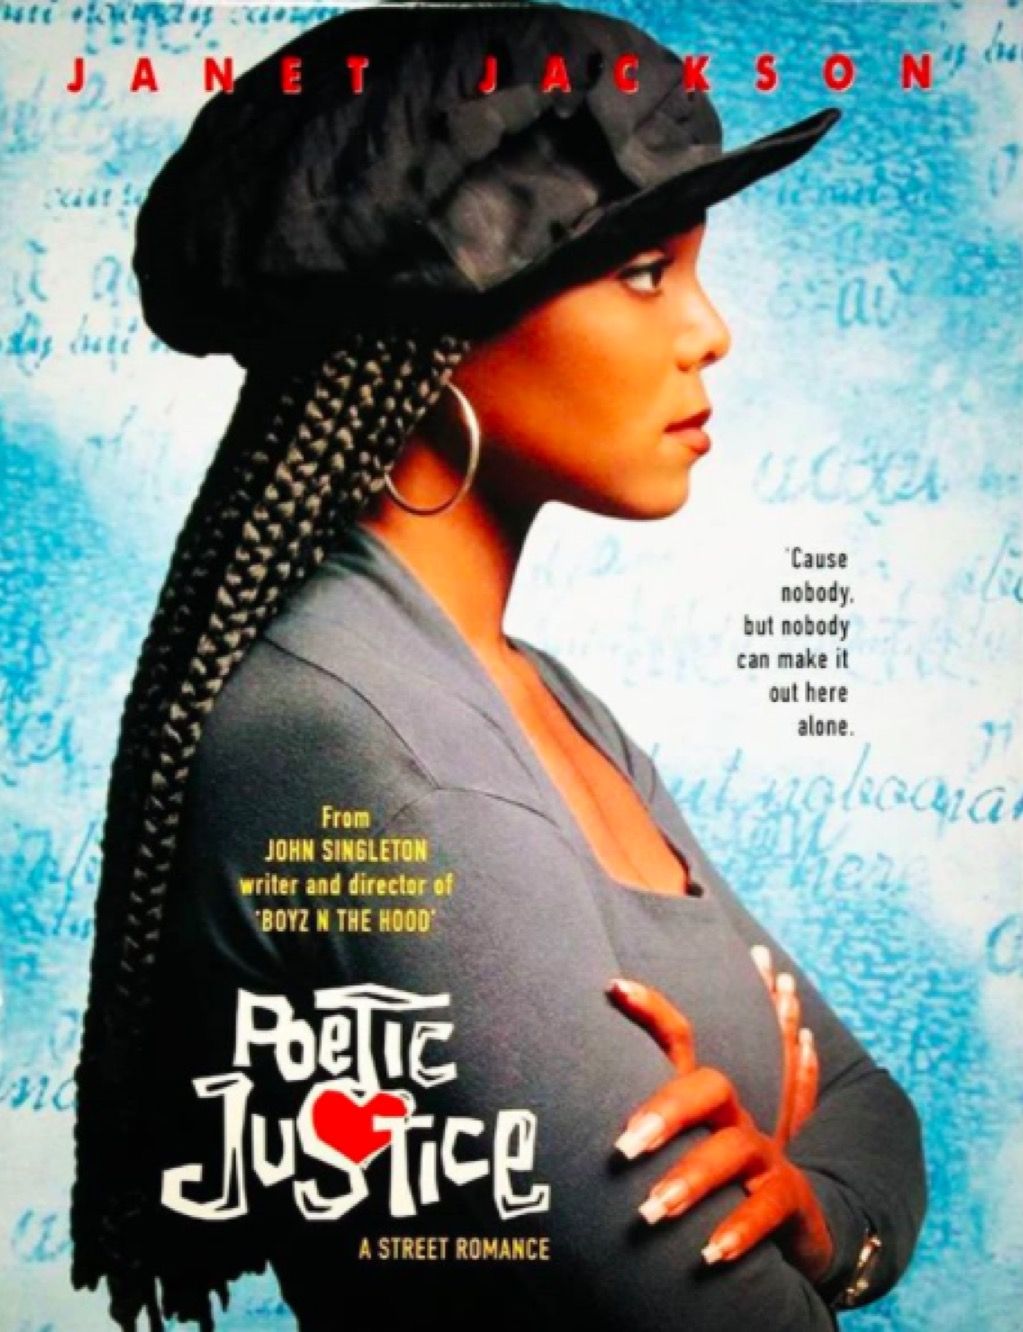 Kotak ikonik Janet Jackson mengepang Poetic Justice